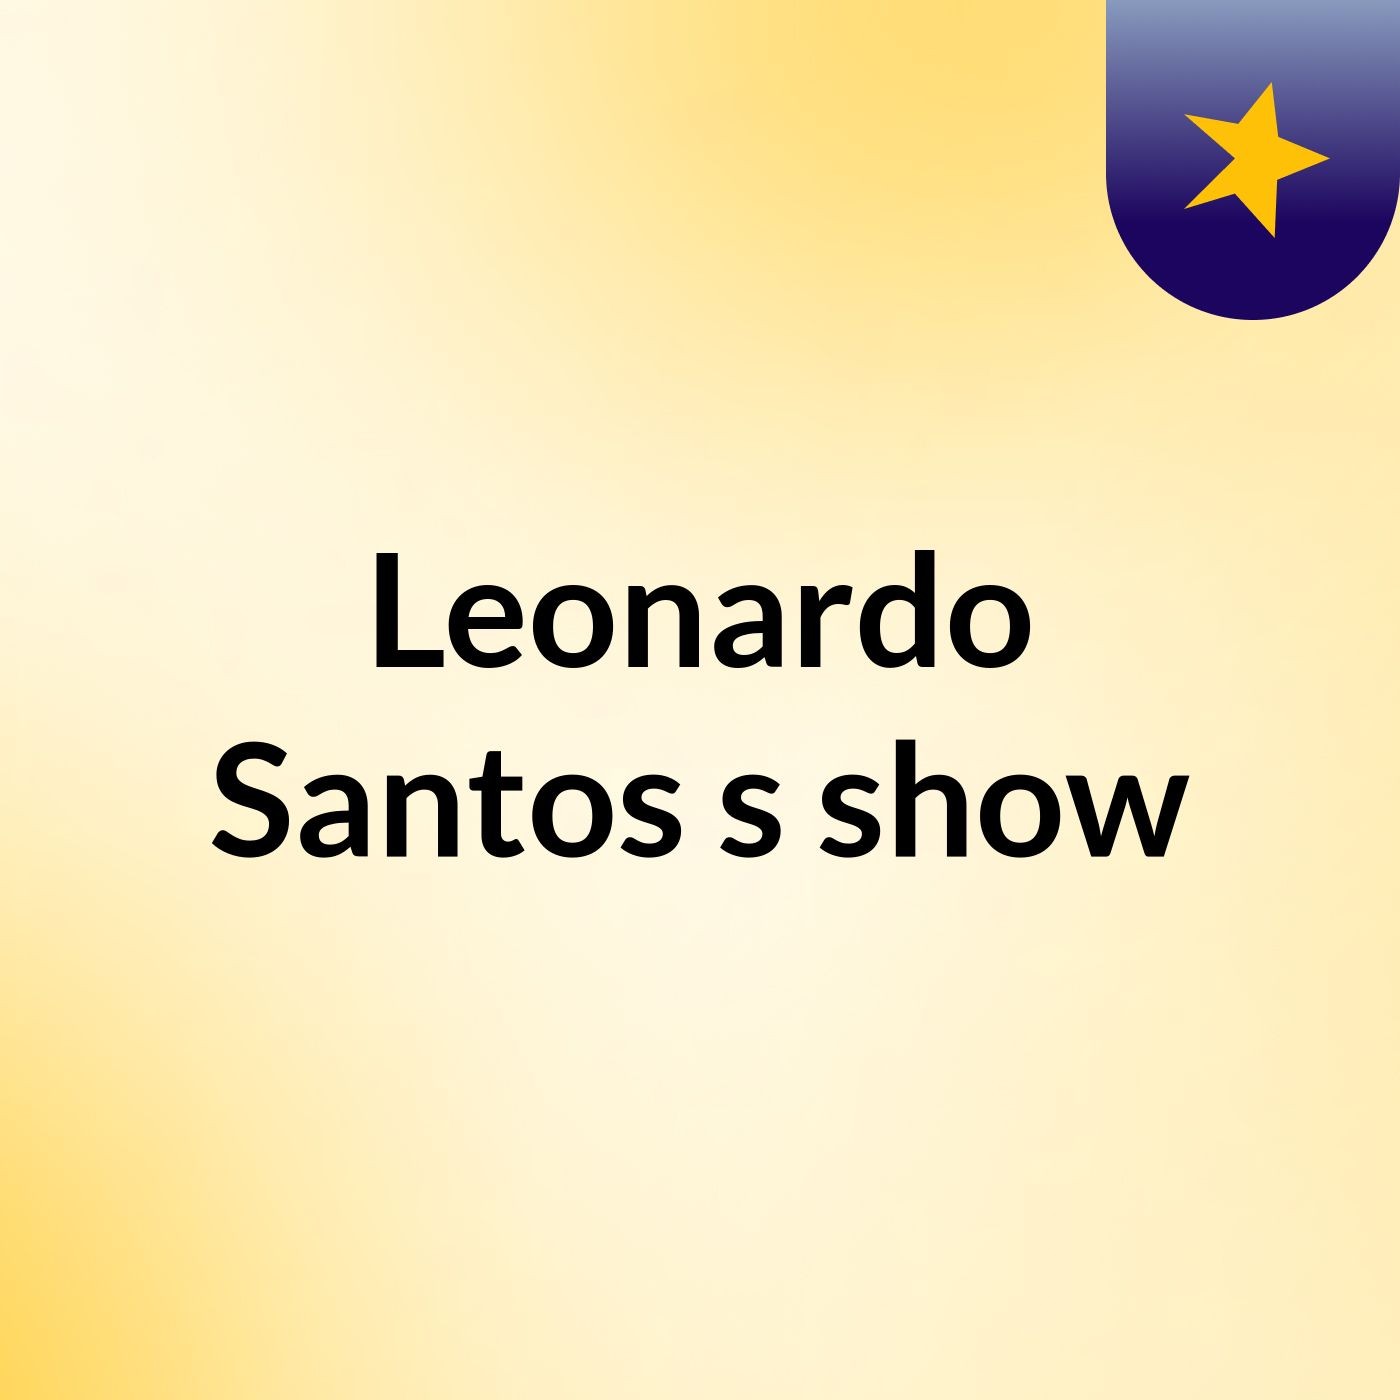 Leonardo Santos's show